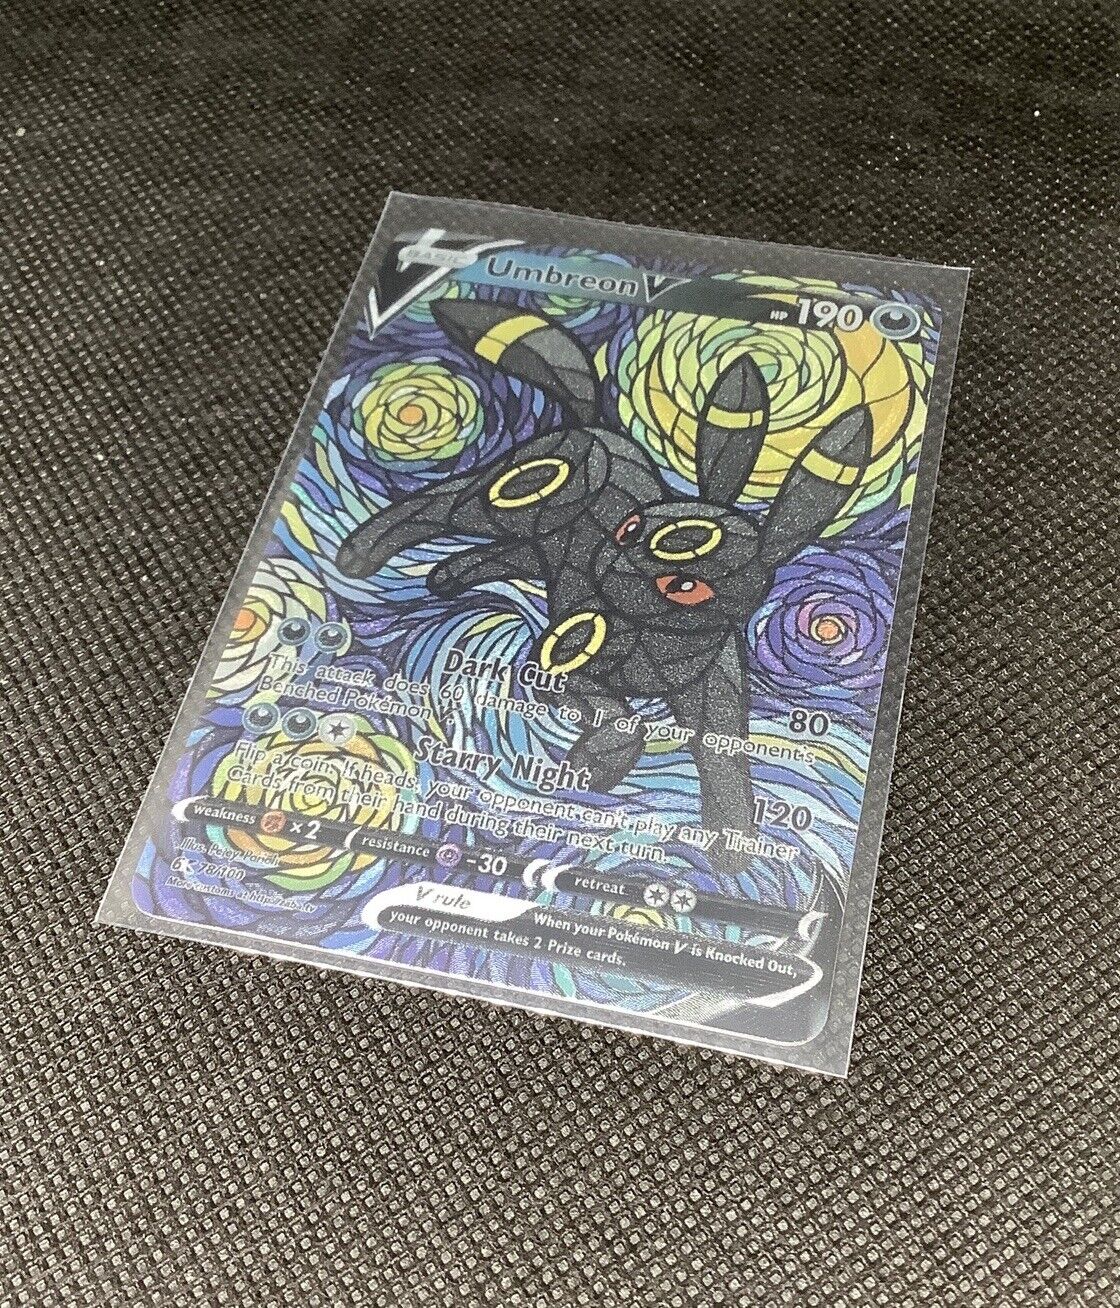 CUSTOM Umbreon Shiny/ Holo Pokemon Card Van Gogh Full/ Alt Art Stained Glass NM.